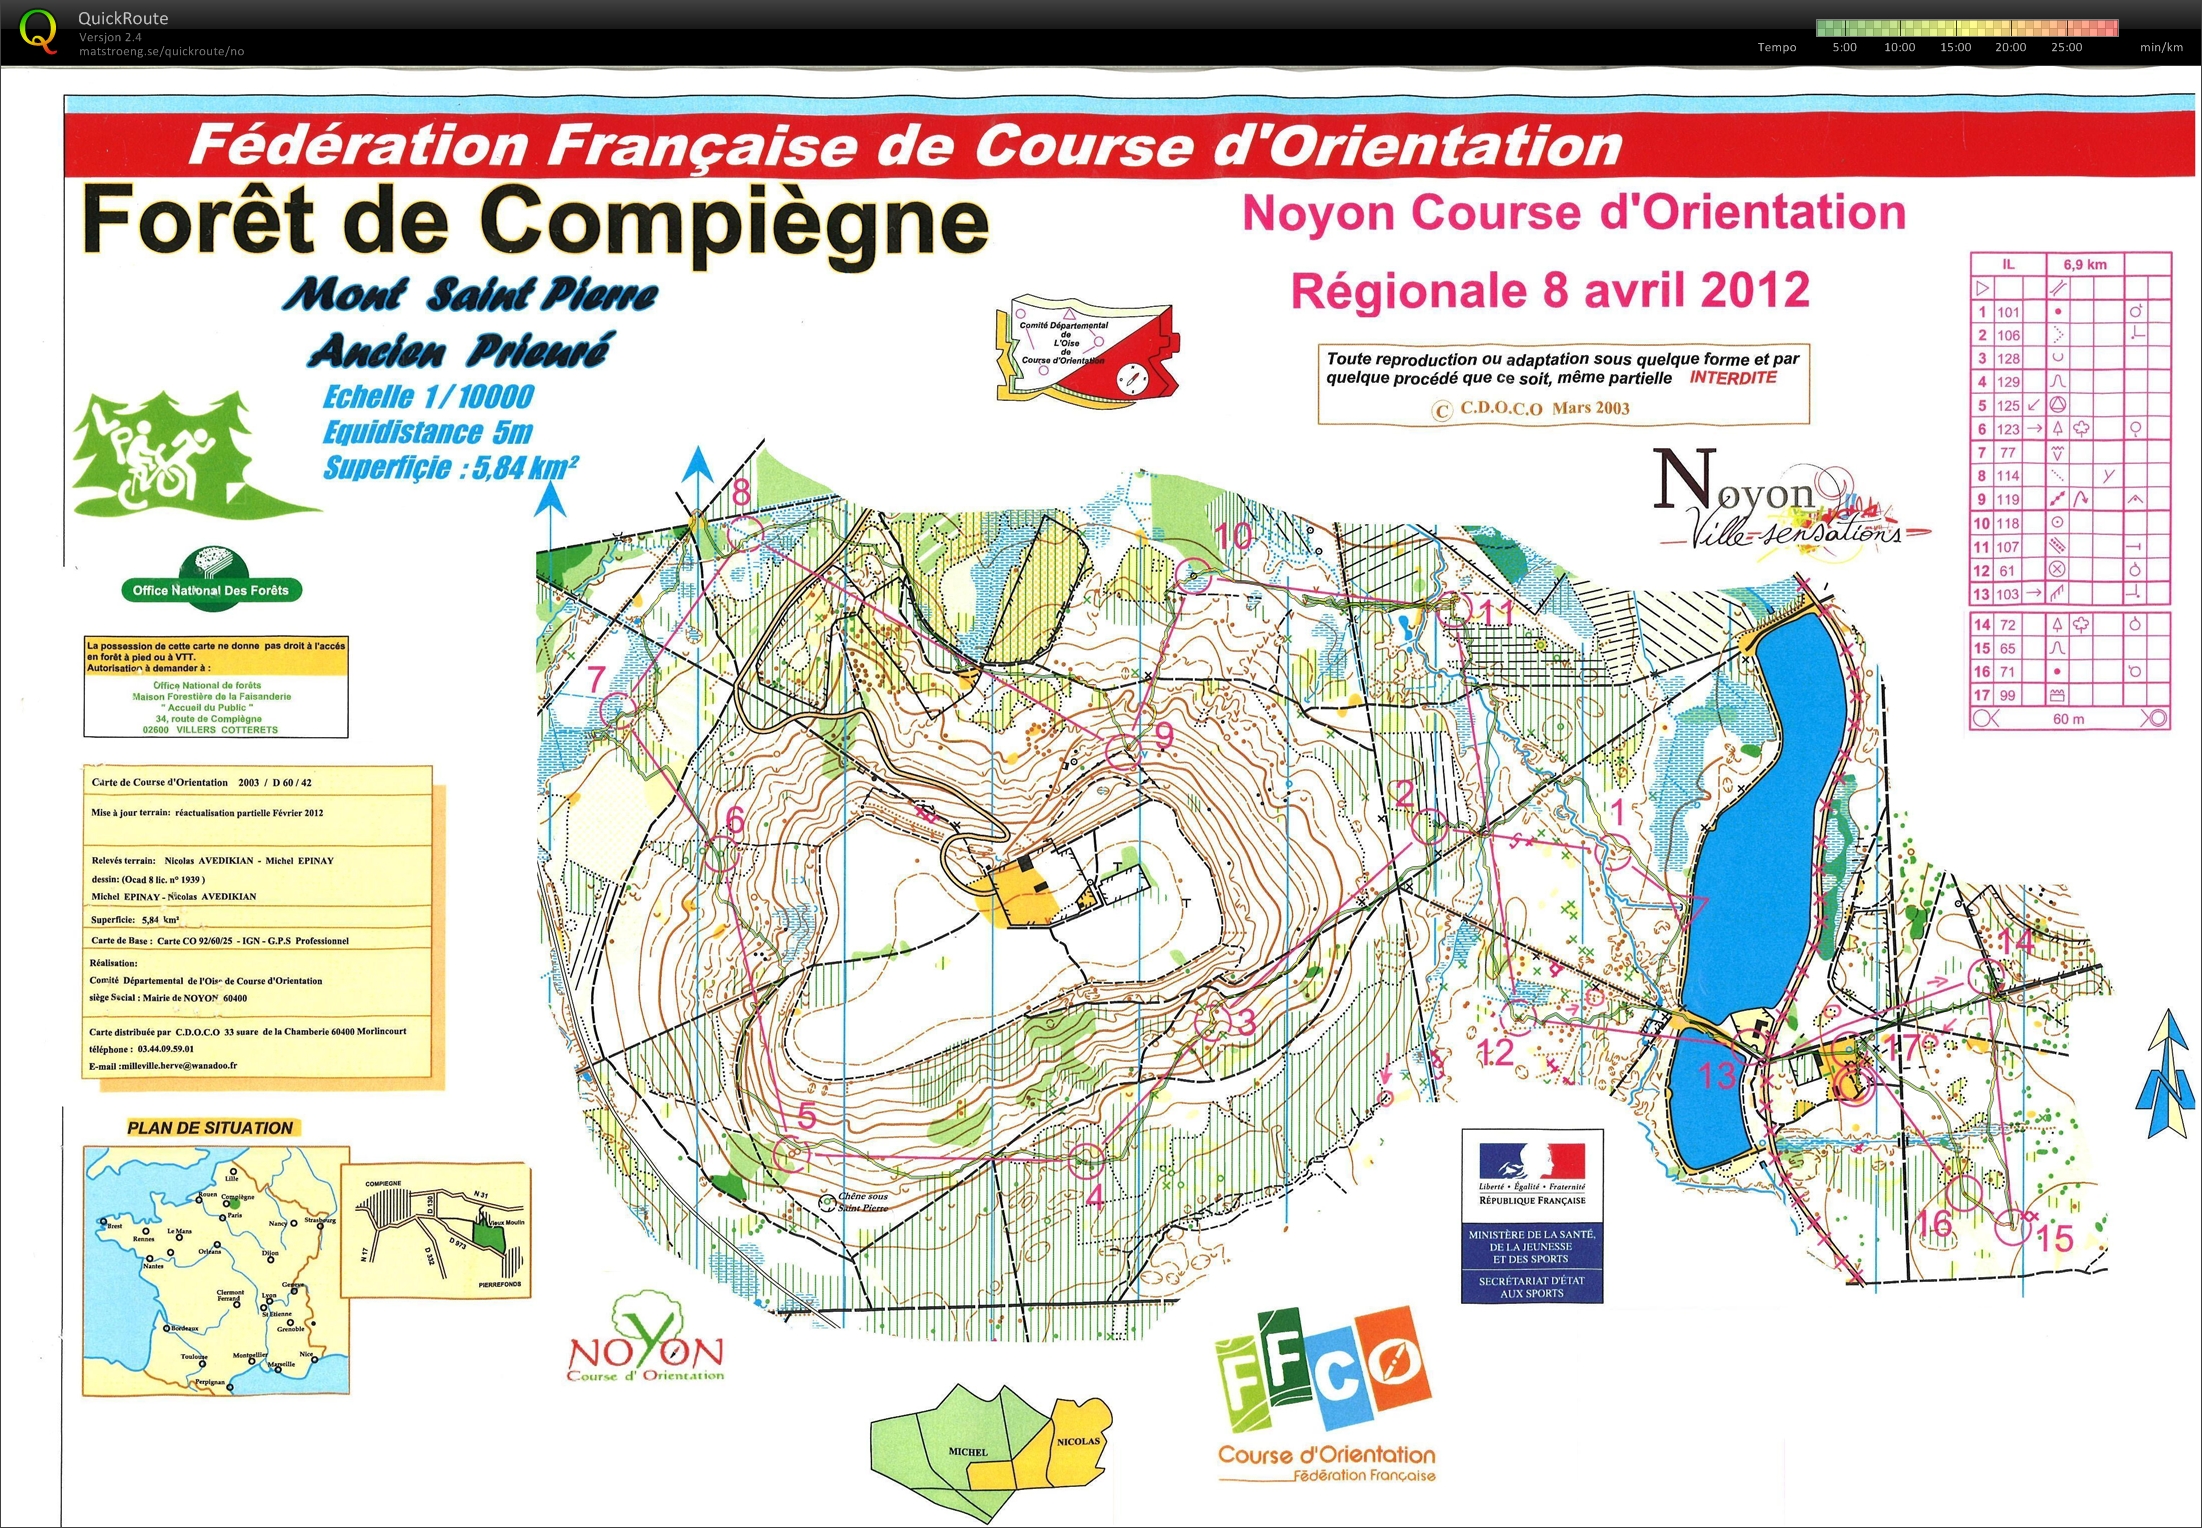 Noyon Course d'Orientation Long (2012-04-08)